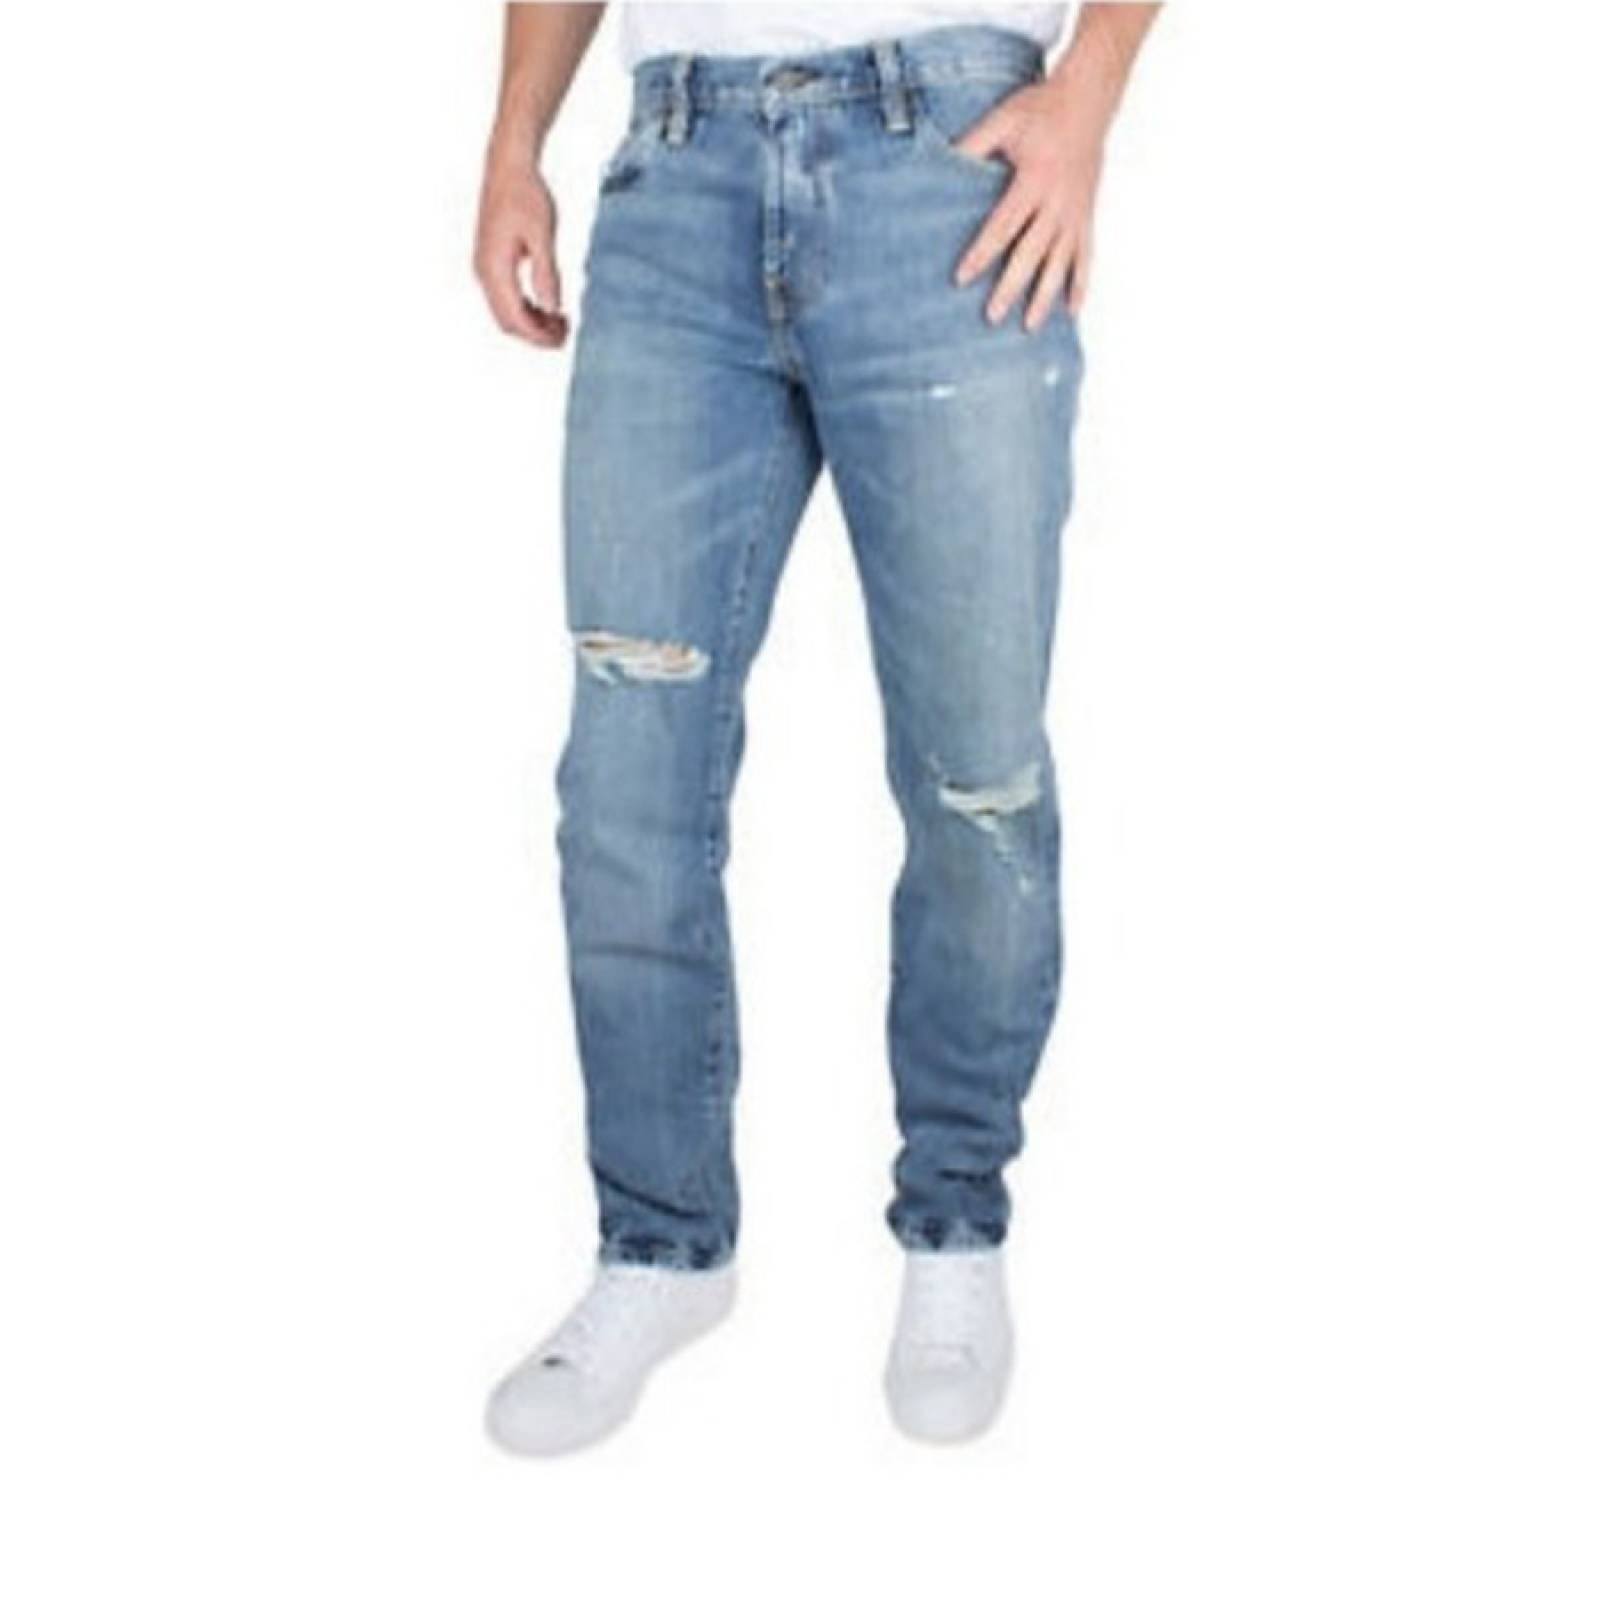 Jeans Levis 511 Slim Fit 04511-3730